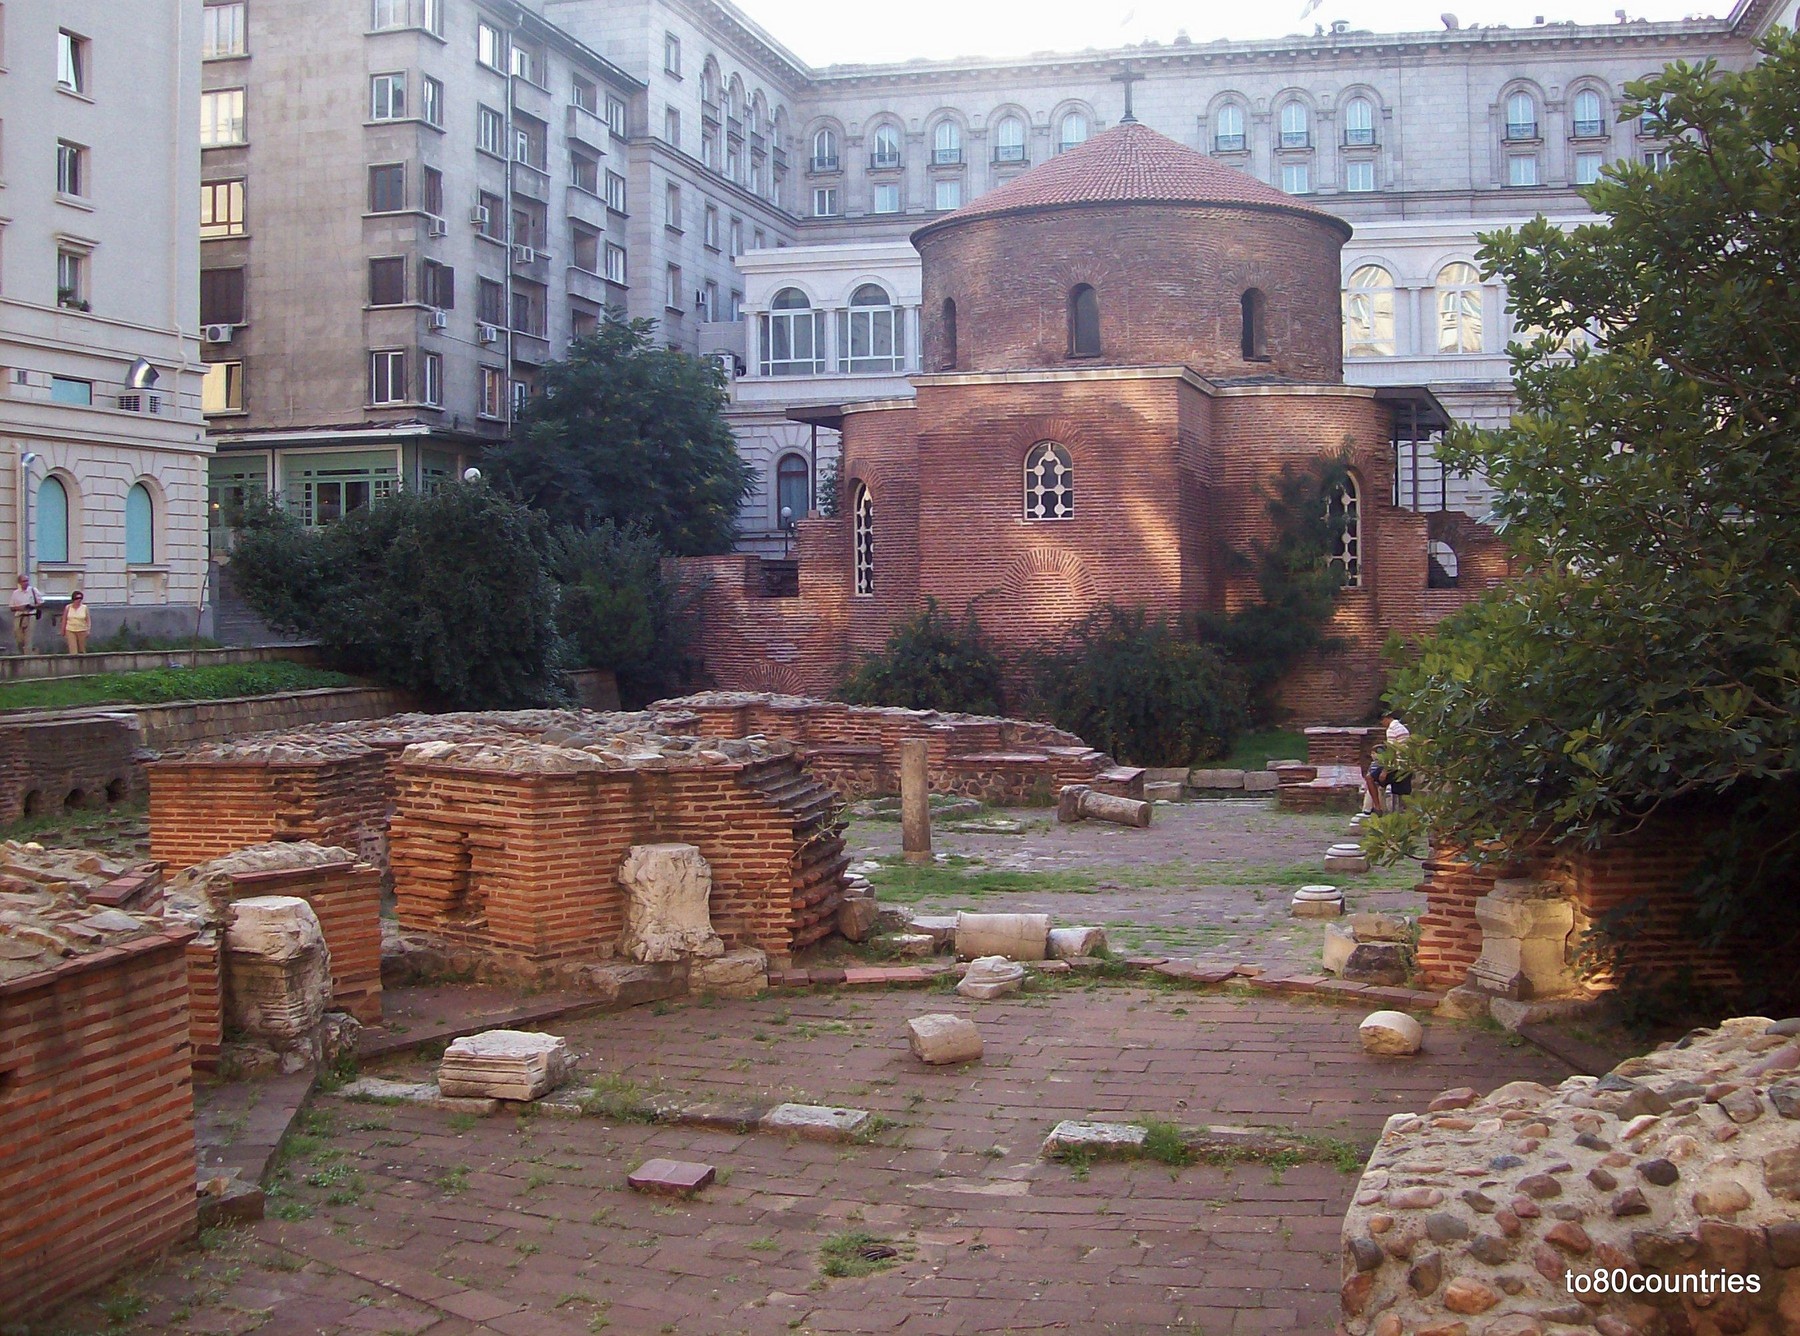 Sofia - Rotunde des Heiligen Georg und die Ruinen von Serdica